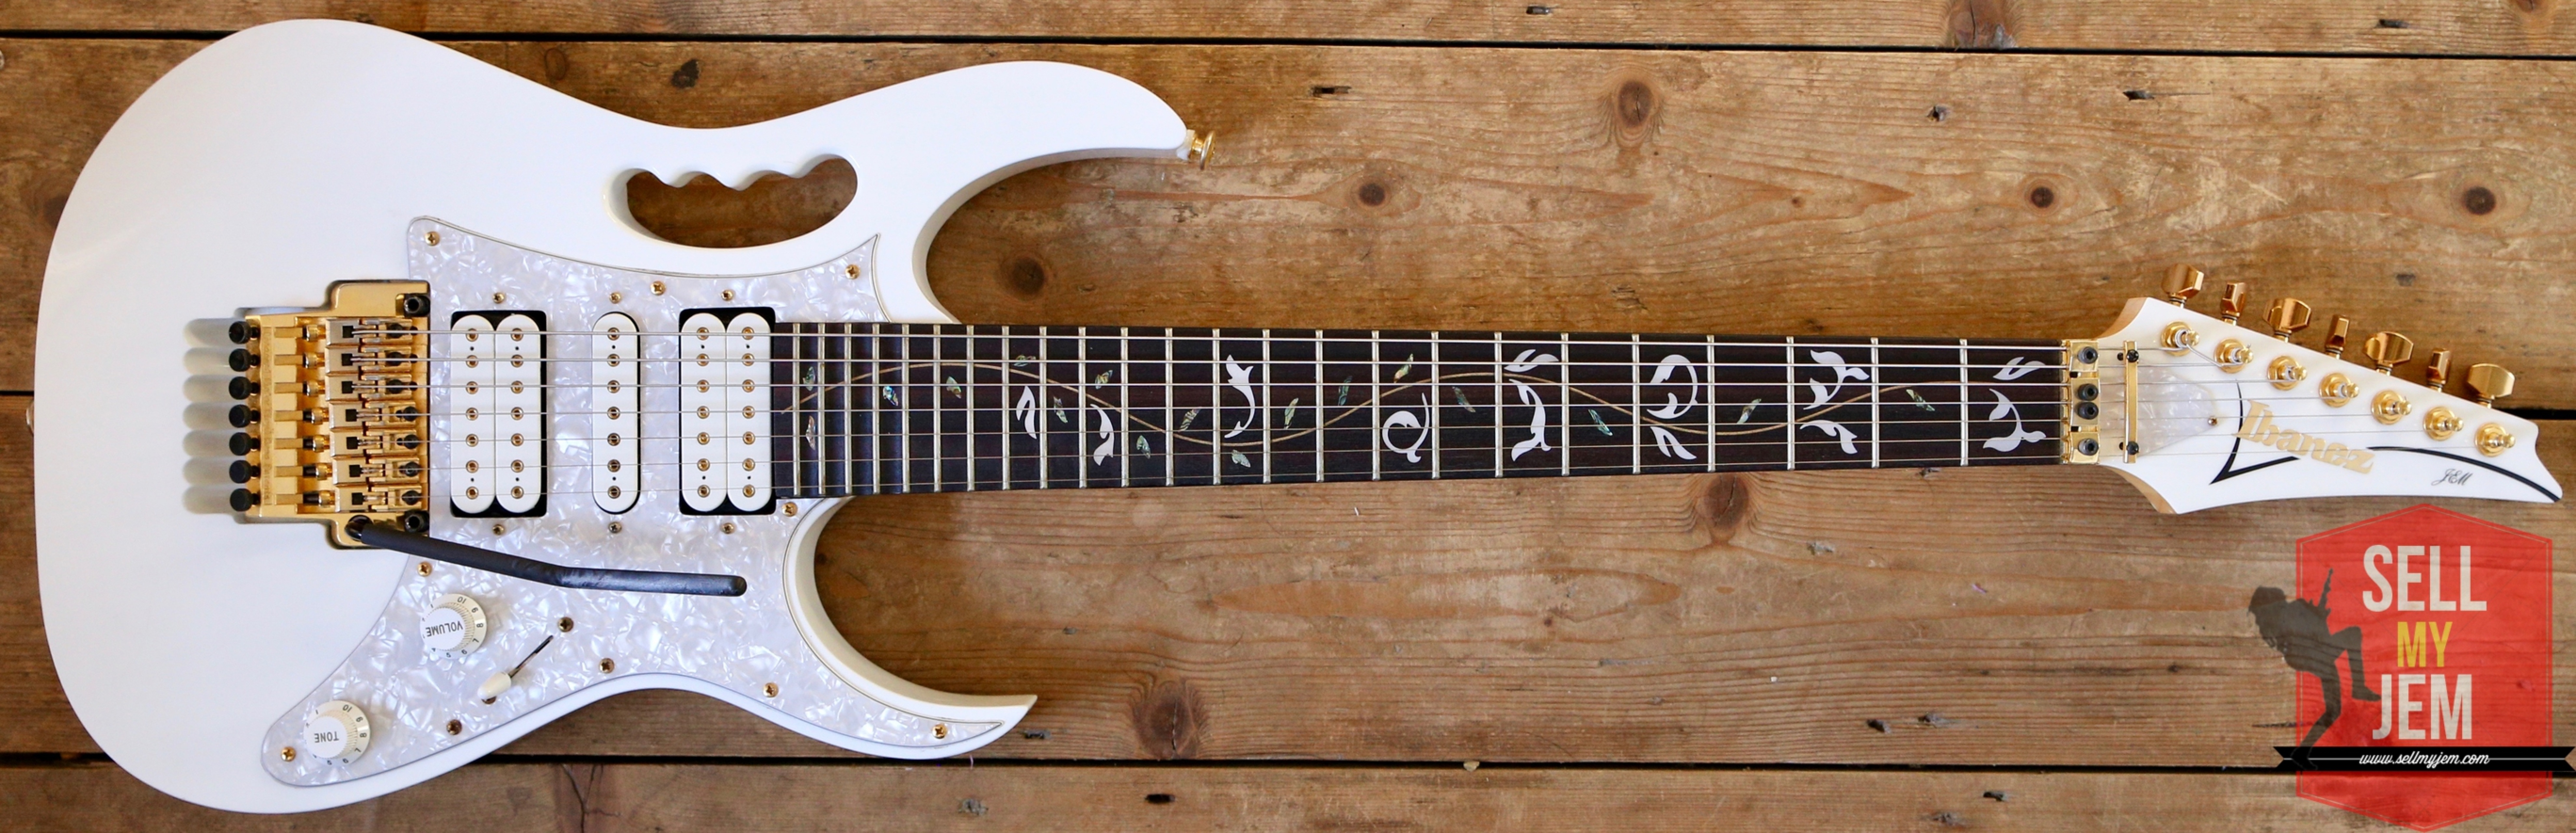 Last 1 In the UK! Stunning 2014 Ibanez Jem 7V7 7 String Monster Guitar